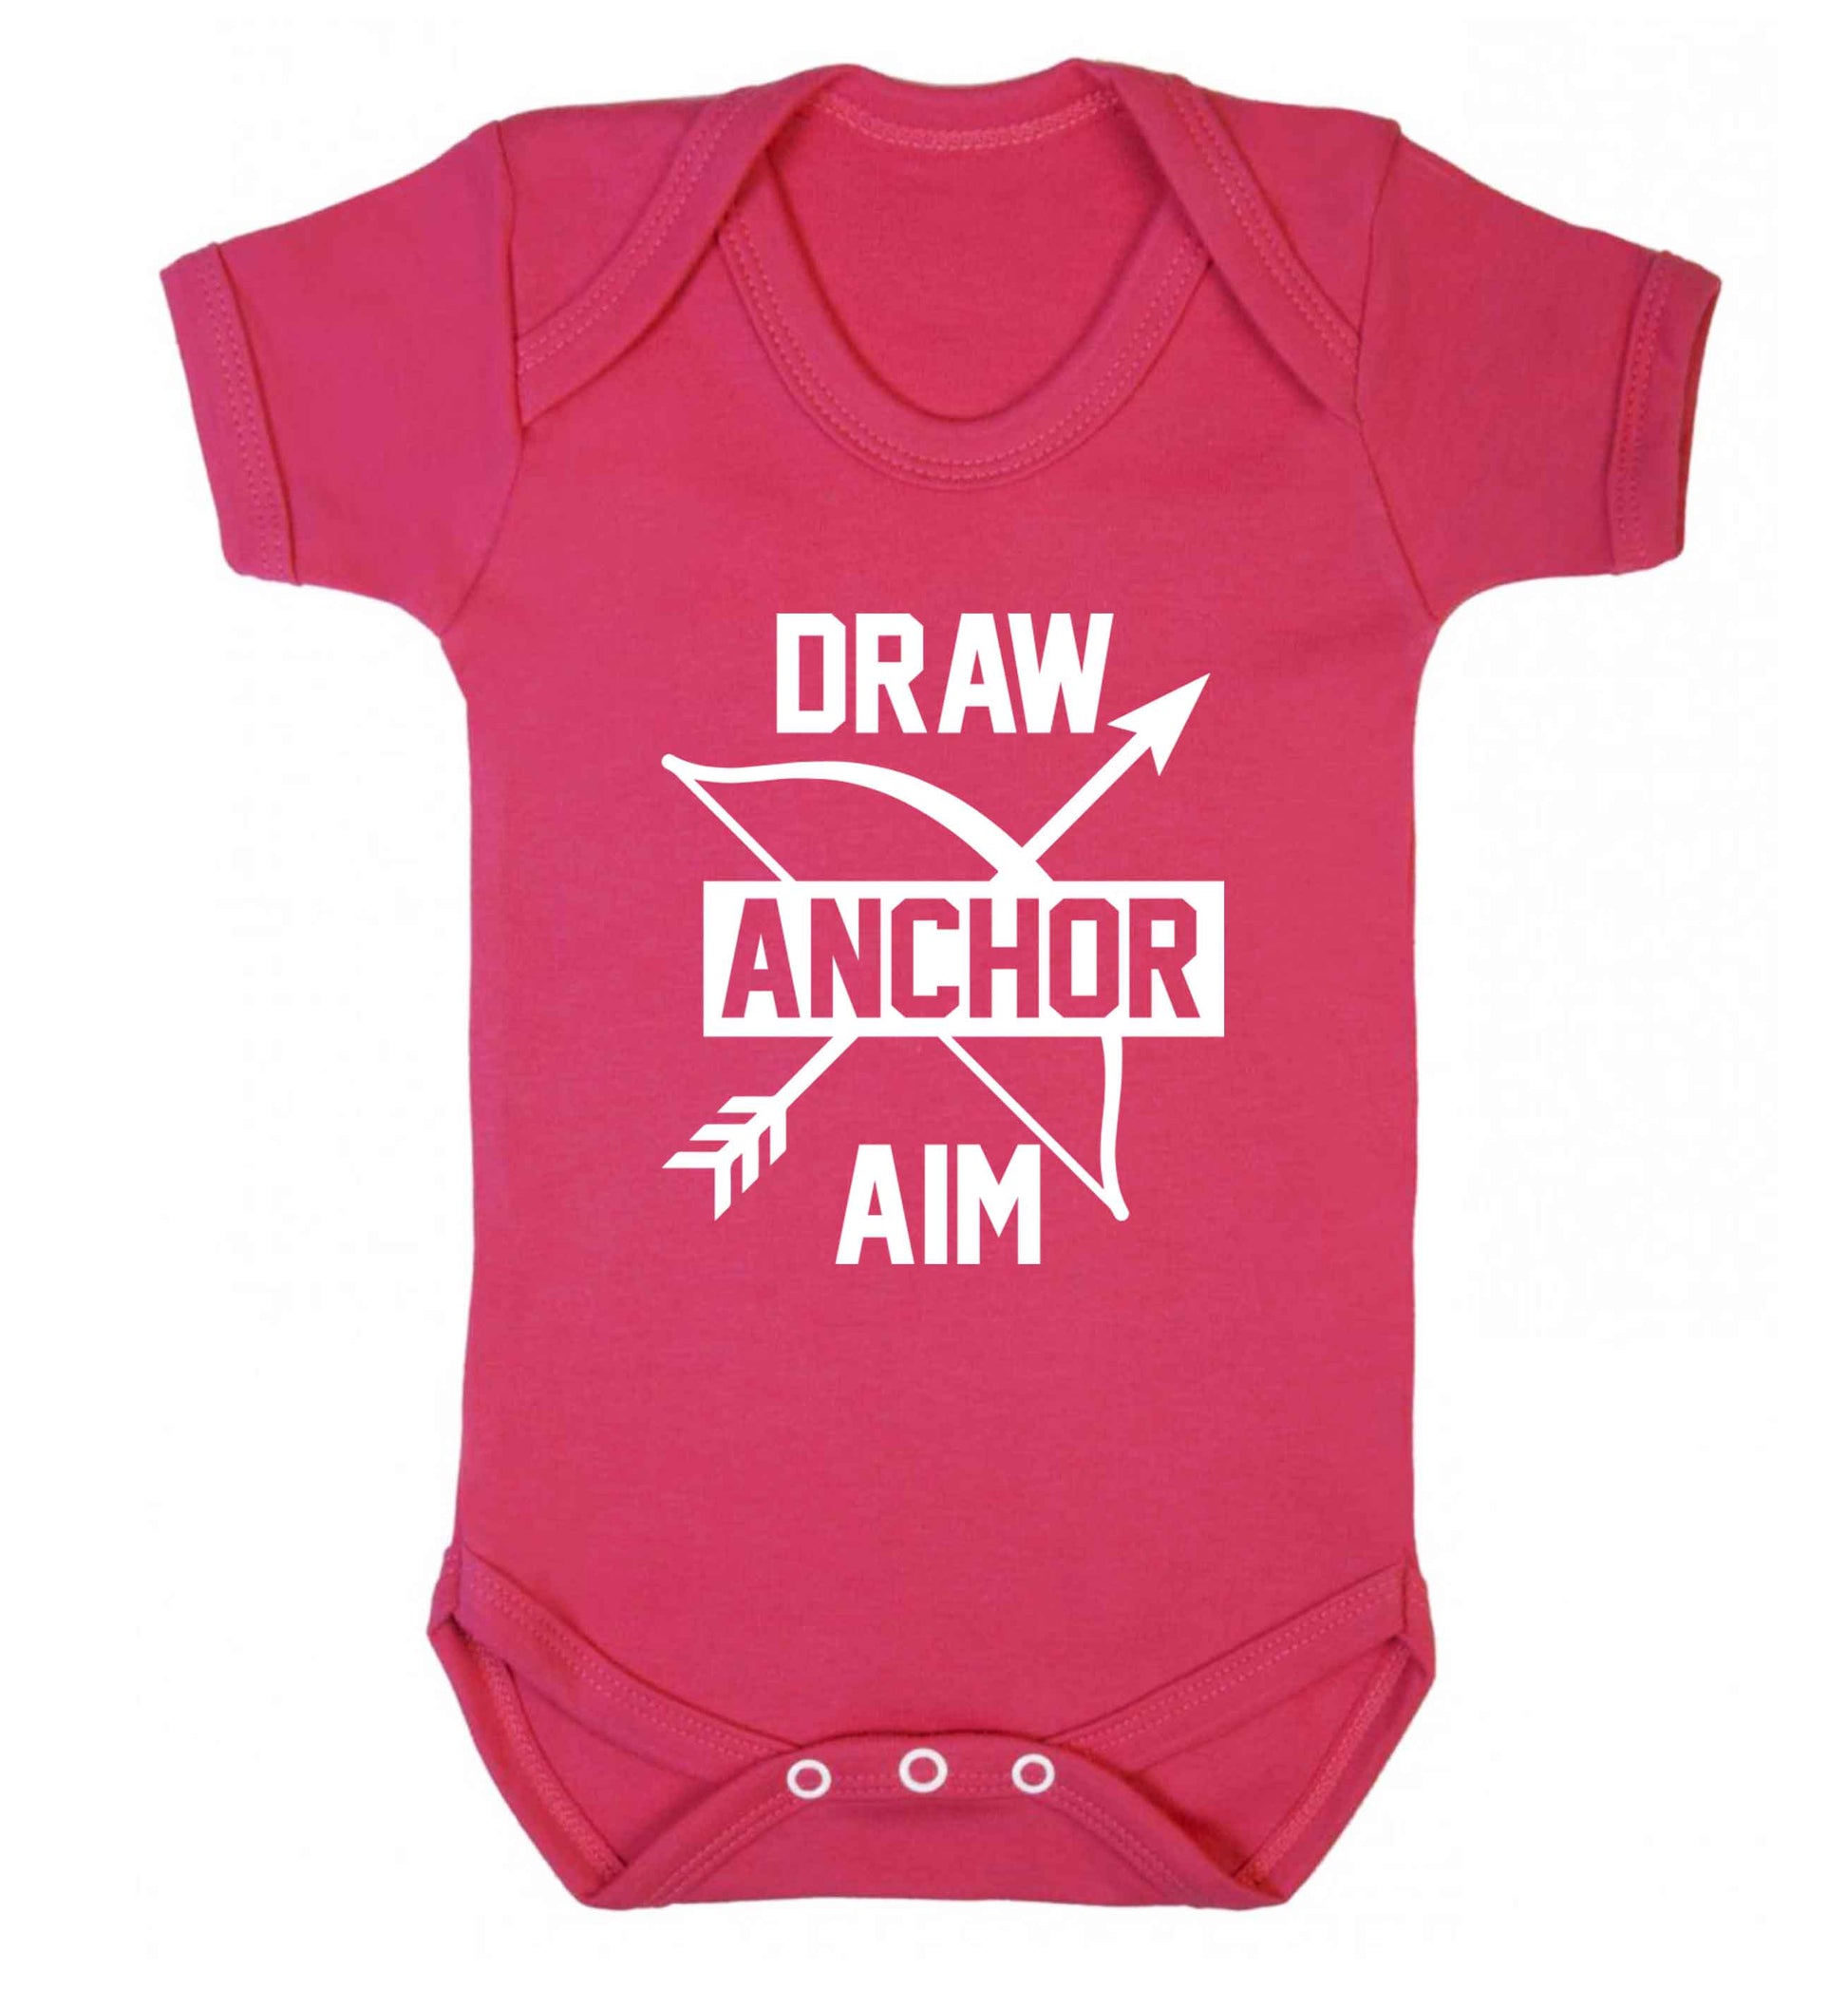 Draw anchor aim Baby Vest dark pink 18-24 months